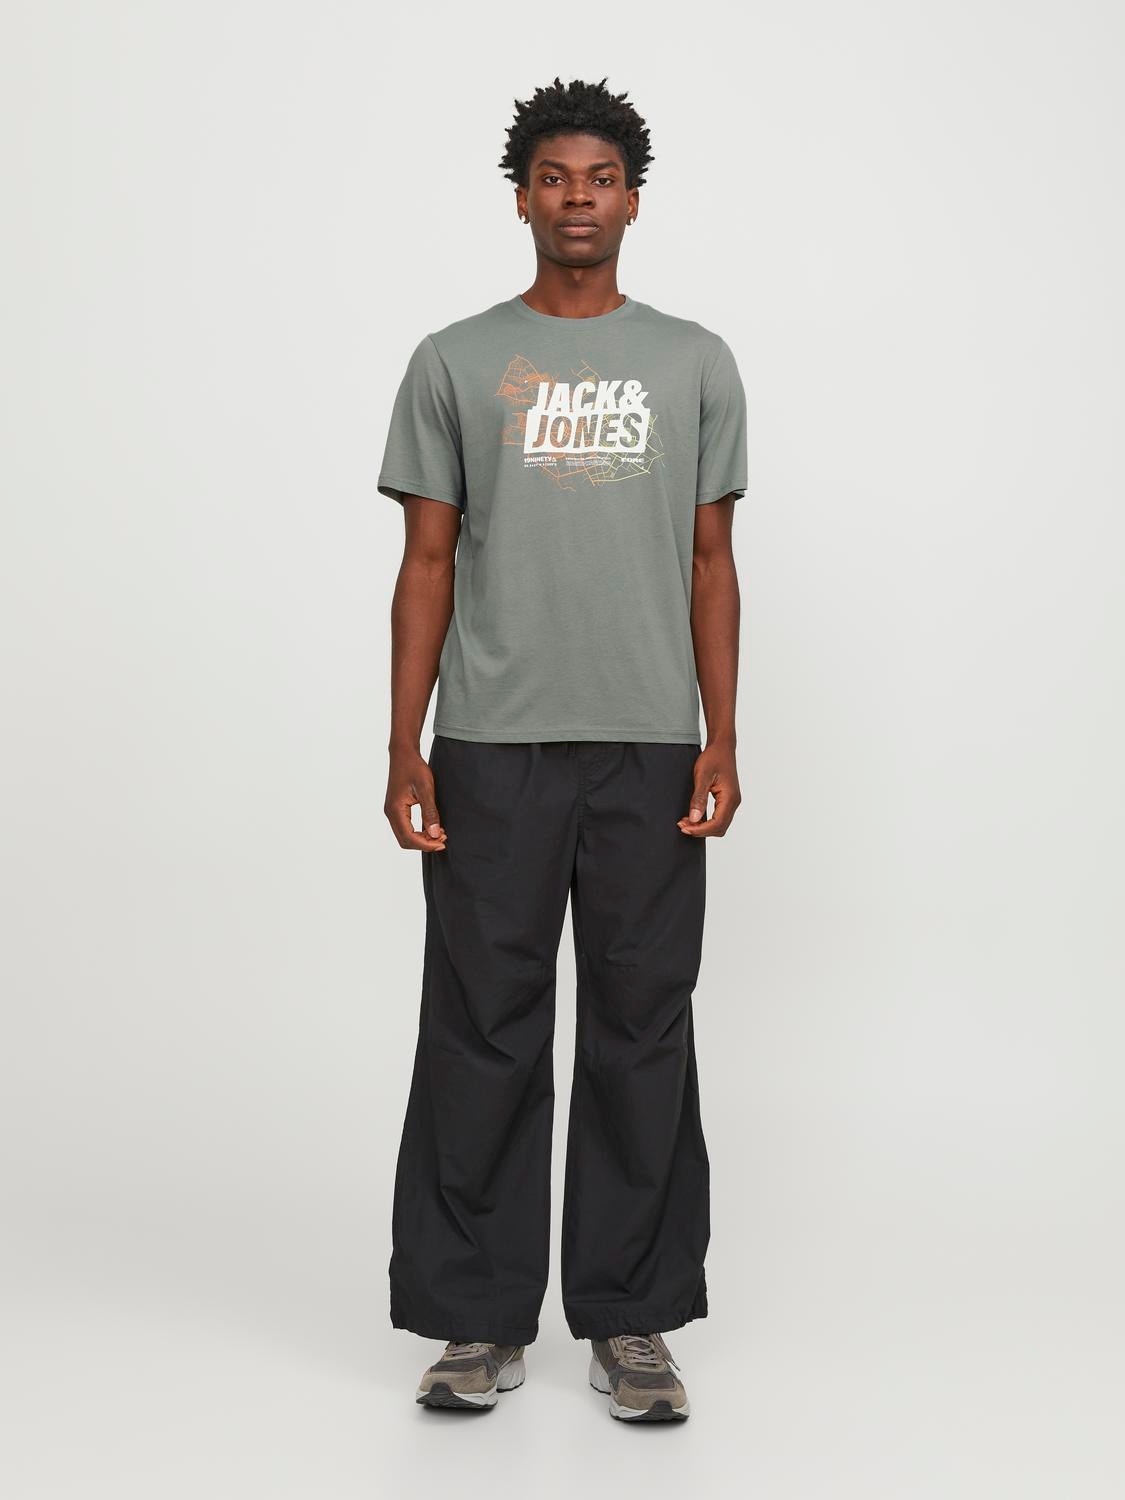 Jack & Jones Camiseta Estampado Cuello redondo -Agave Green - 12252376